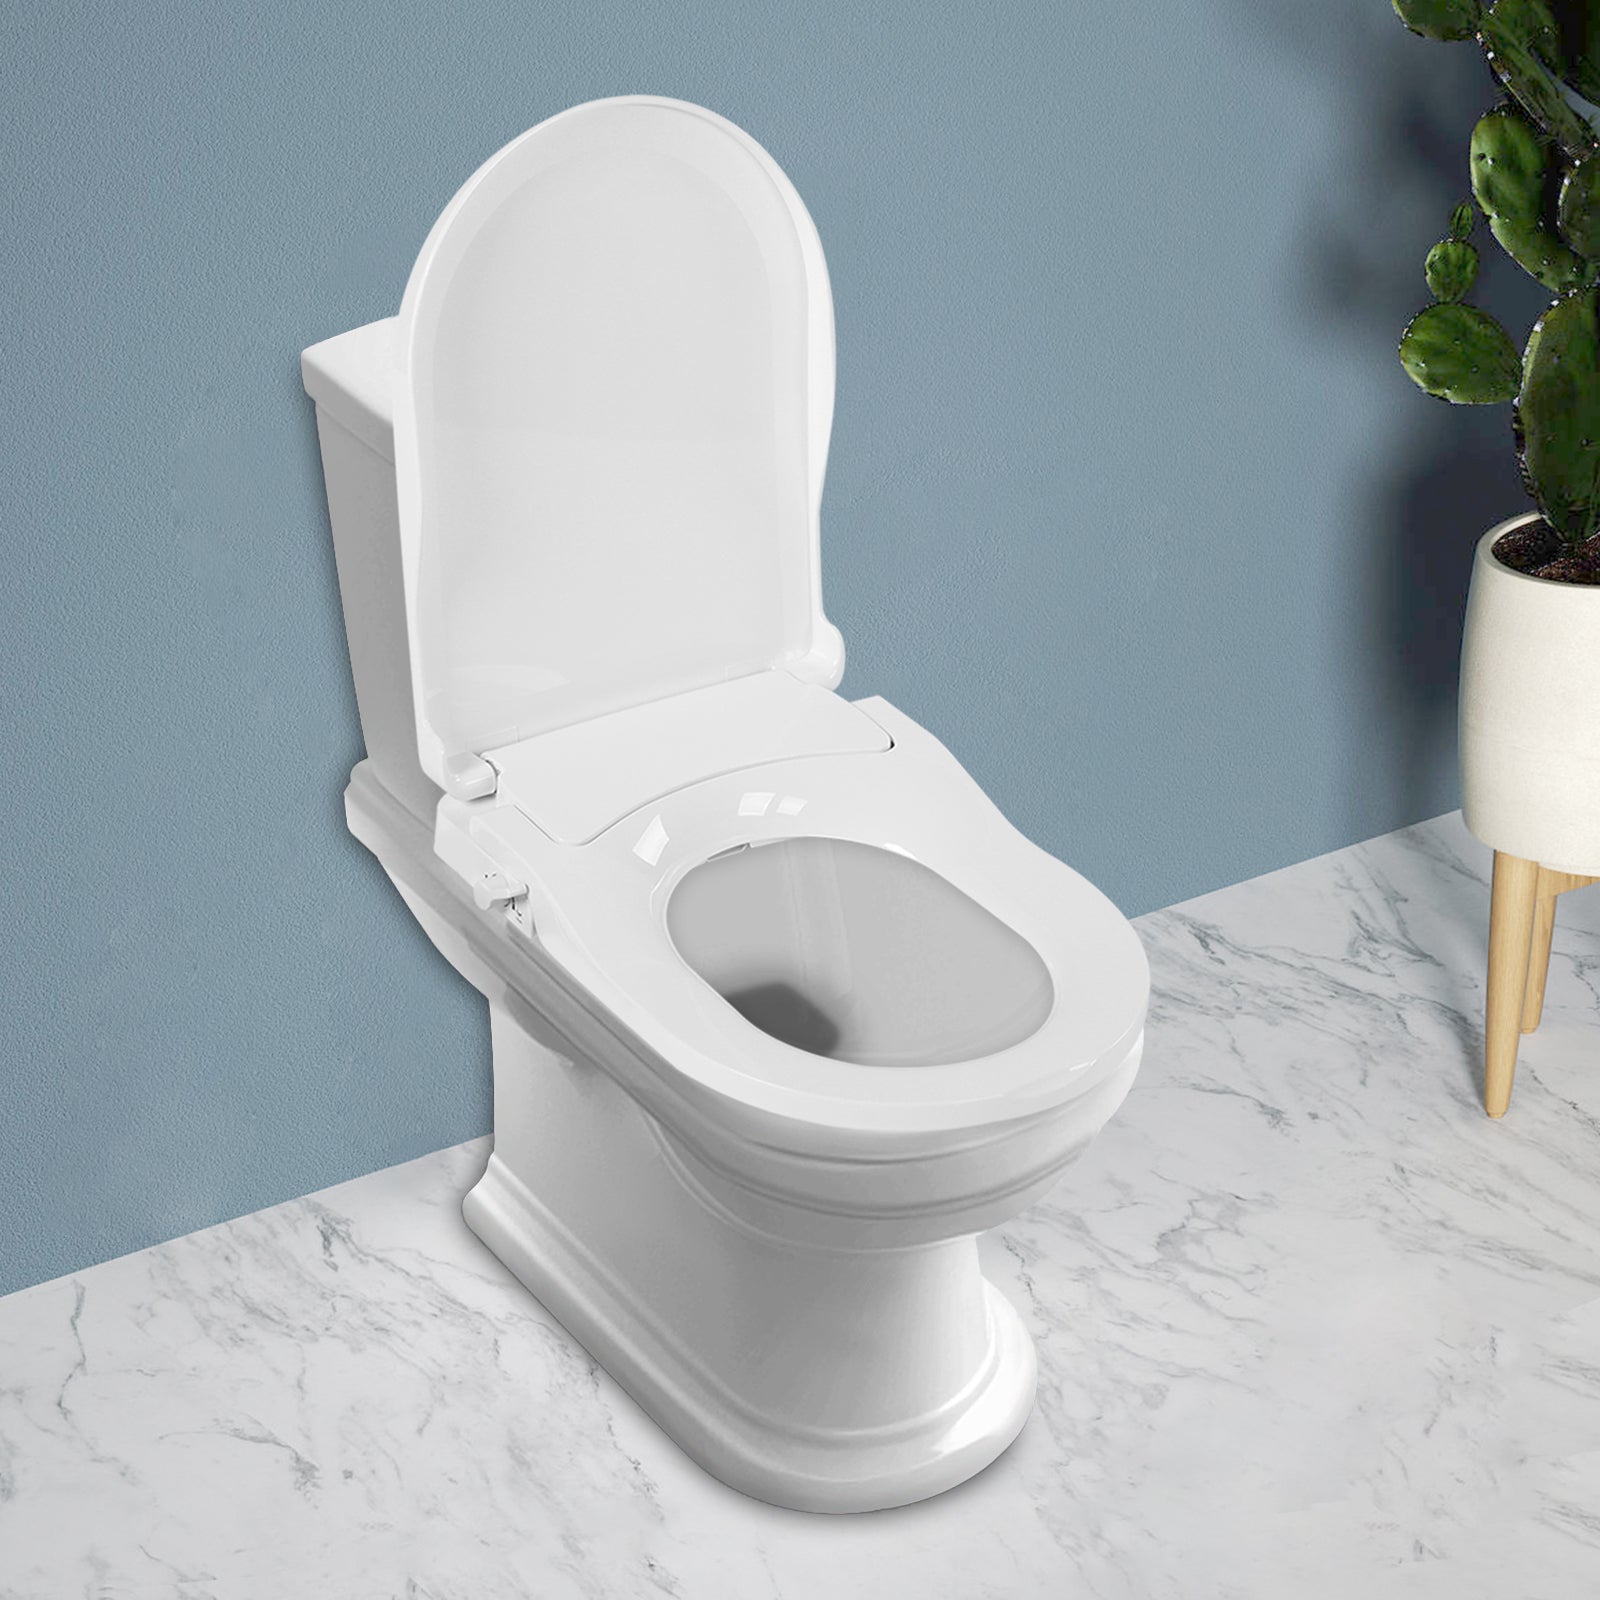 Sedile wc non elettrico con bidet integrato con getto d'acqua dolce, doppi ugelli, igienico, antibatterico, coperchio removibile